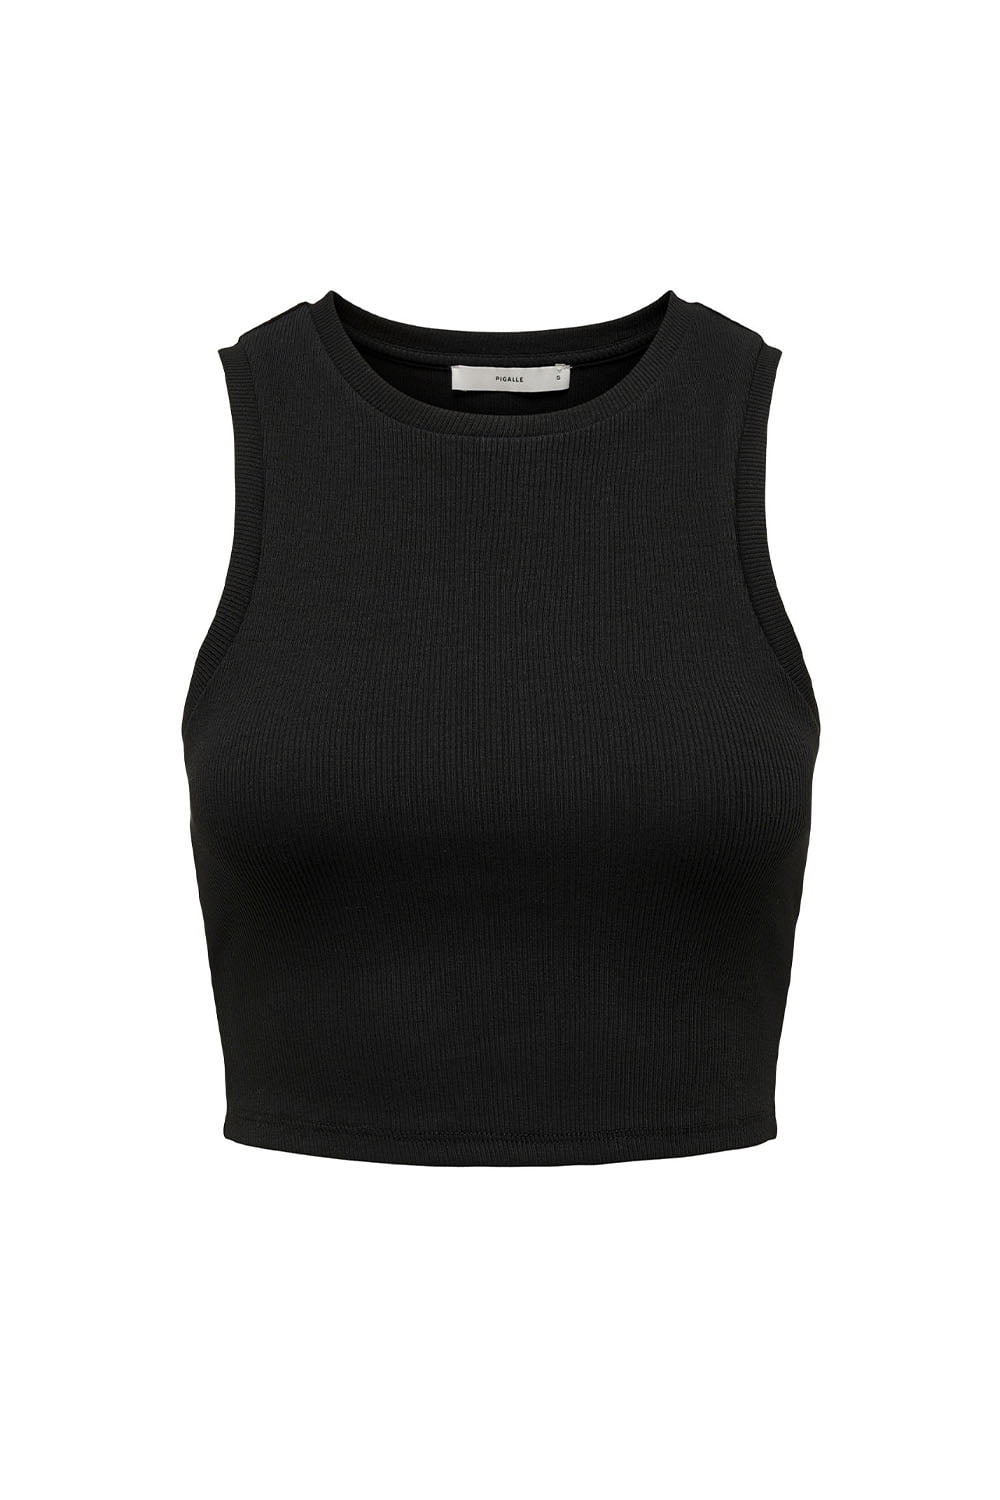 Γυναικεία Crop Top Αμάνικη Μπλούζα ONLY 15282771 Μαύρο